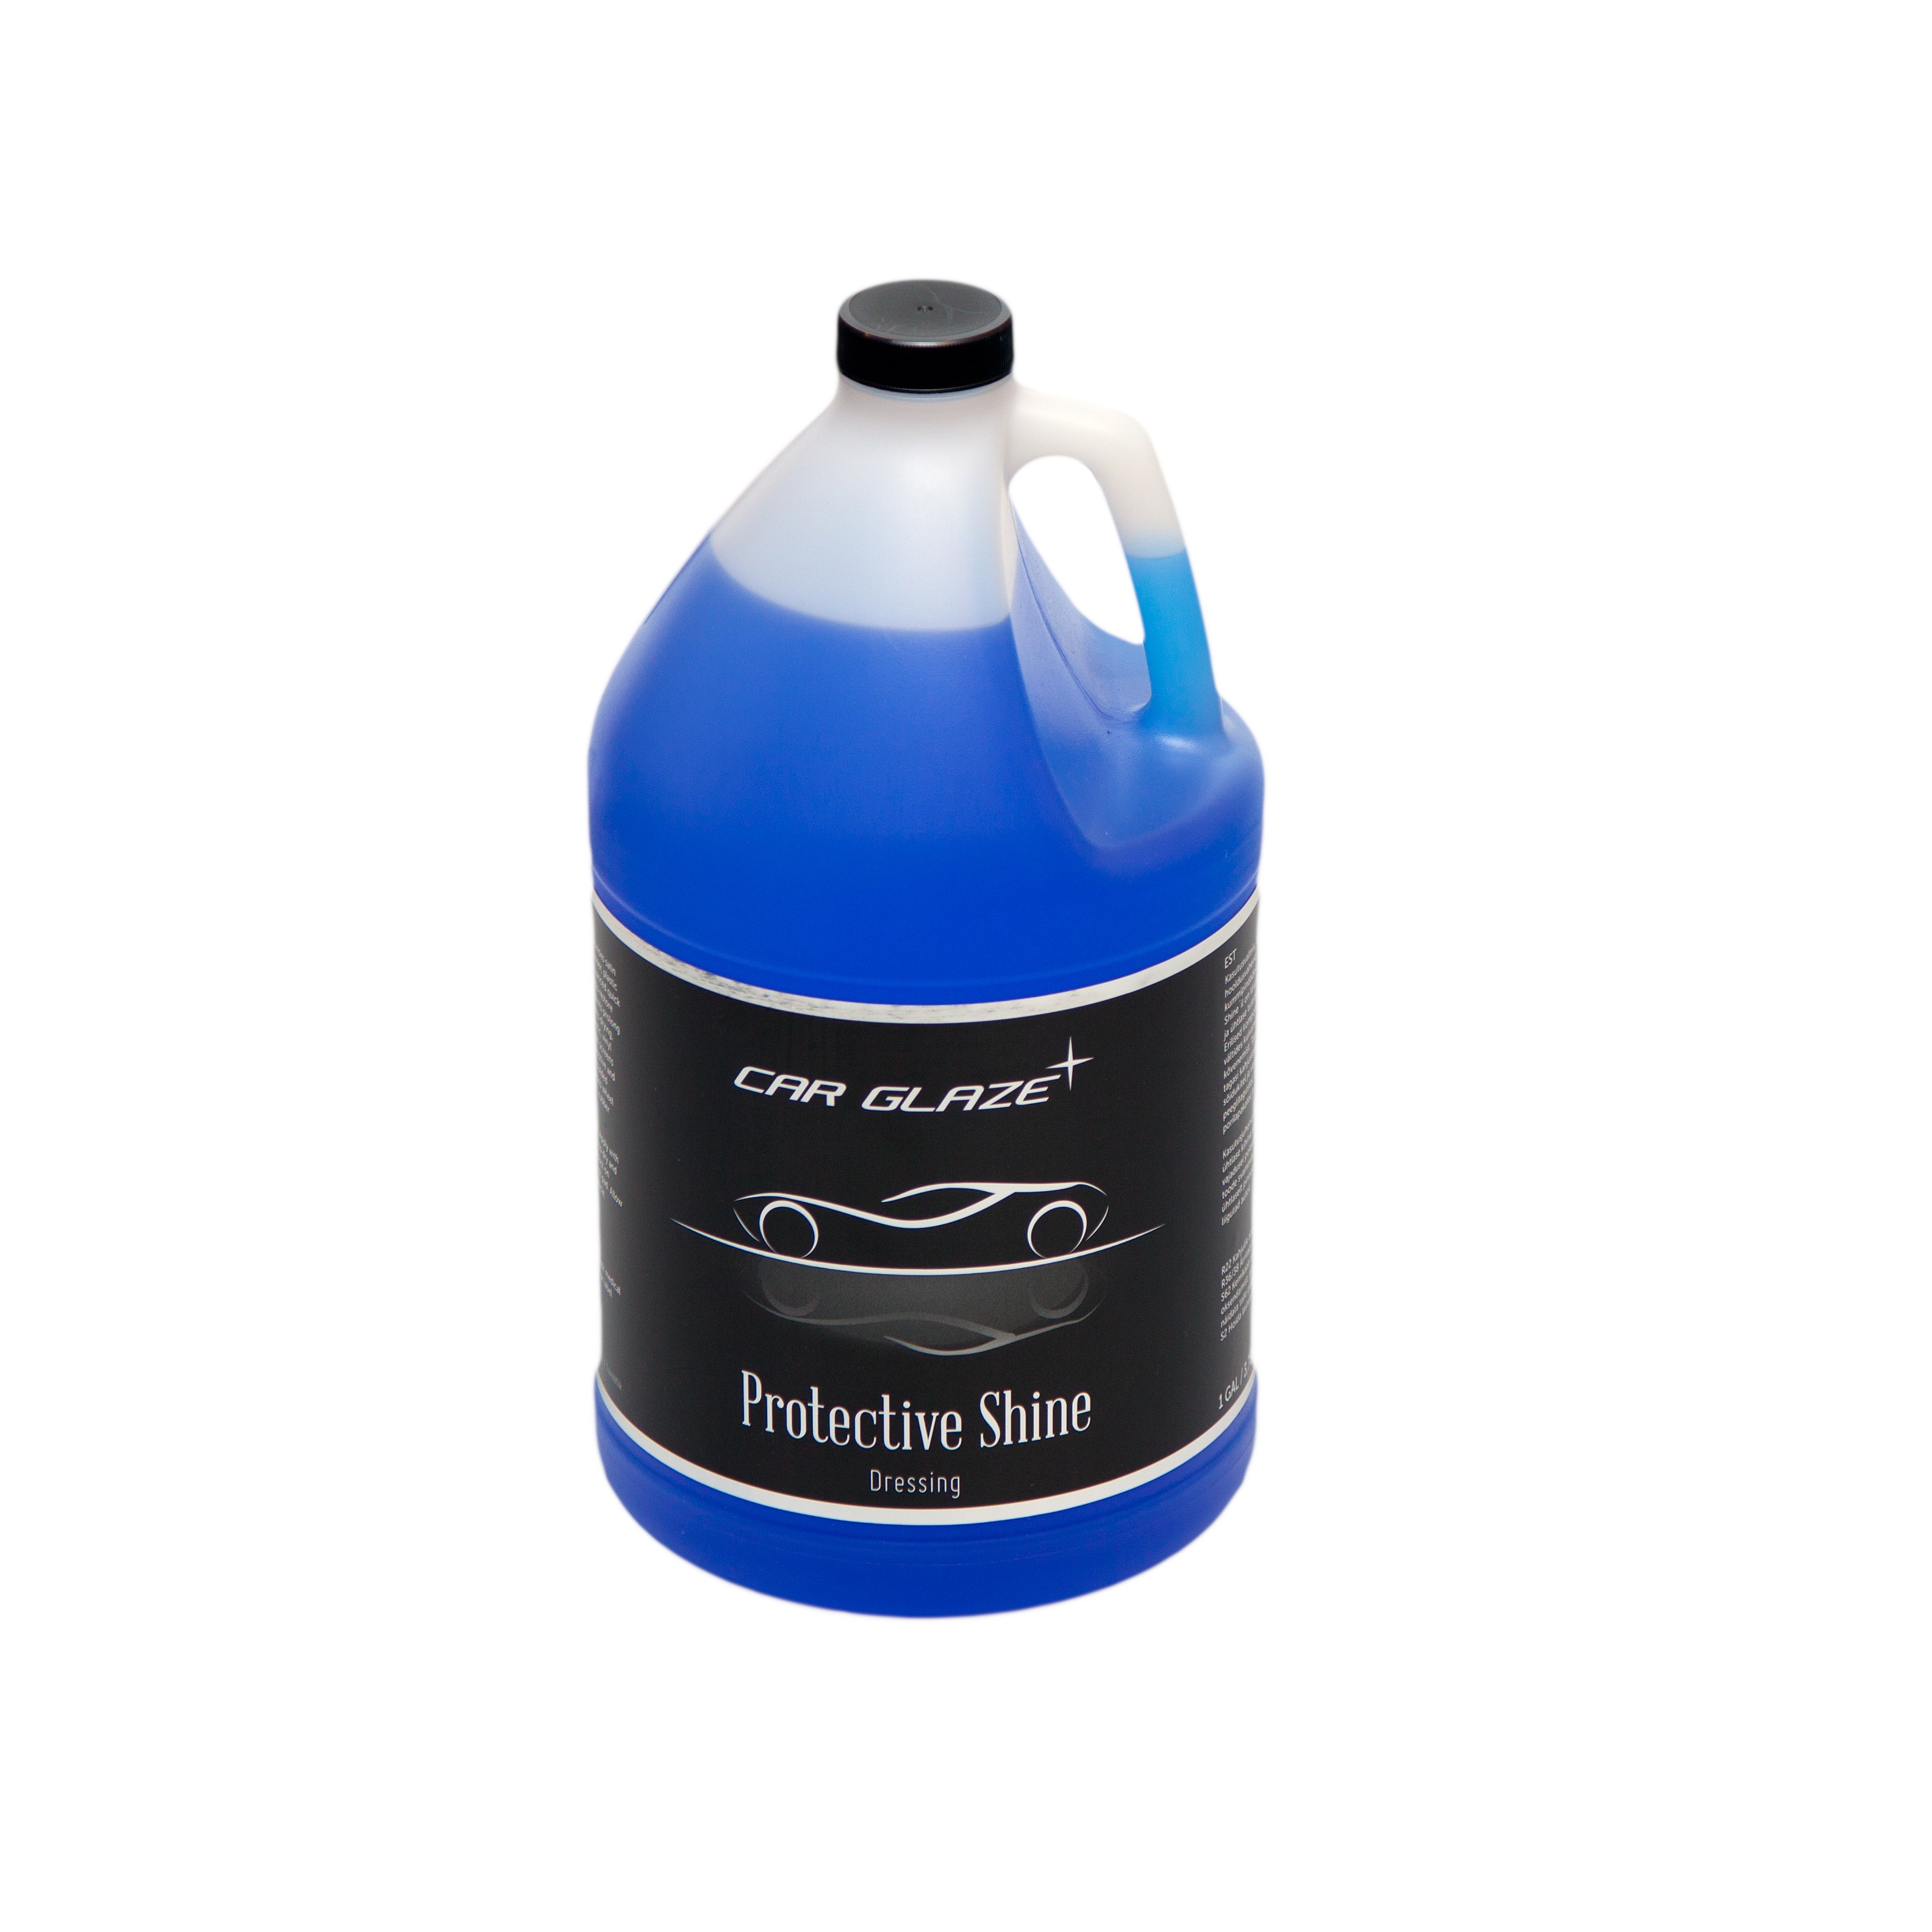 PROTECTIVE SHINE  - Car Glaze - средство для блеска и защиты резины и пластика - блеск для шин